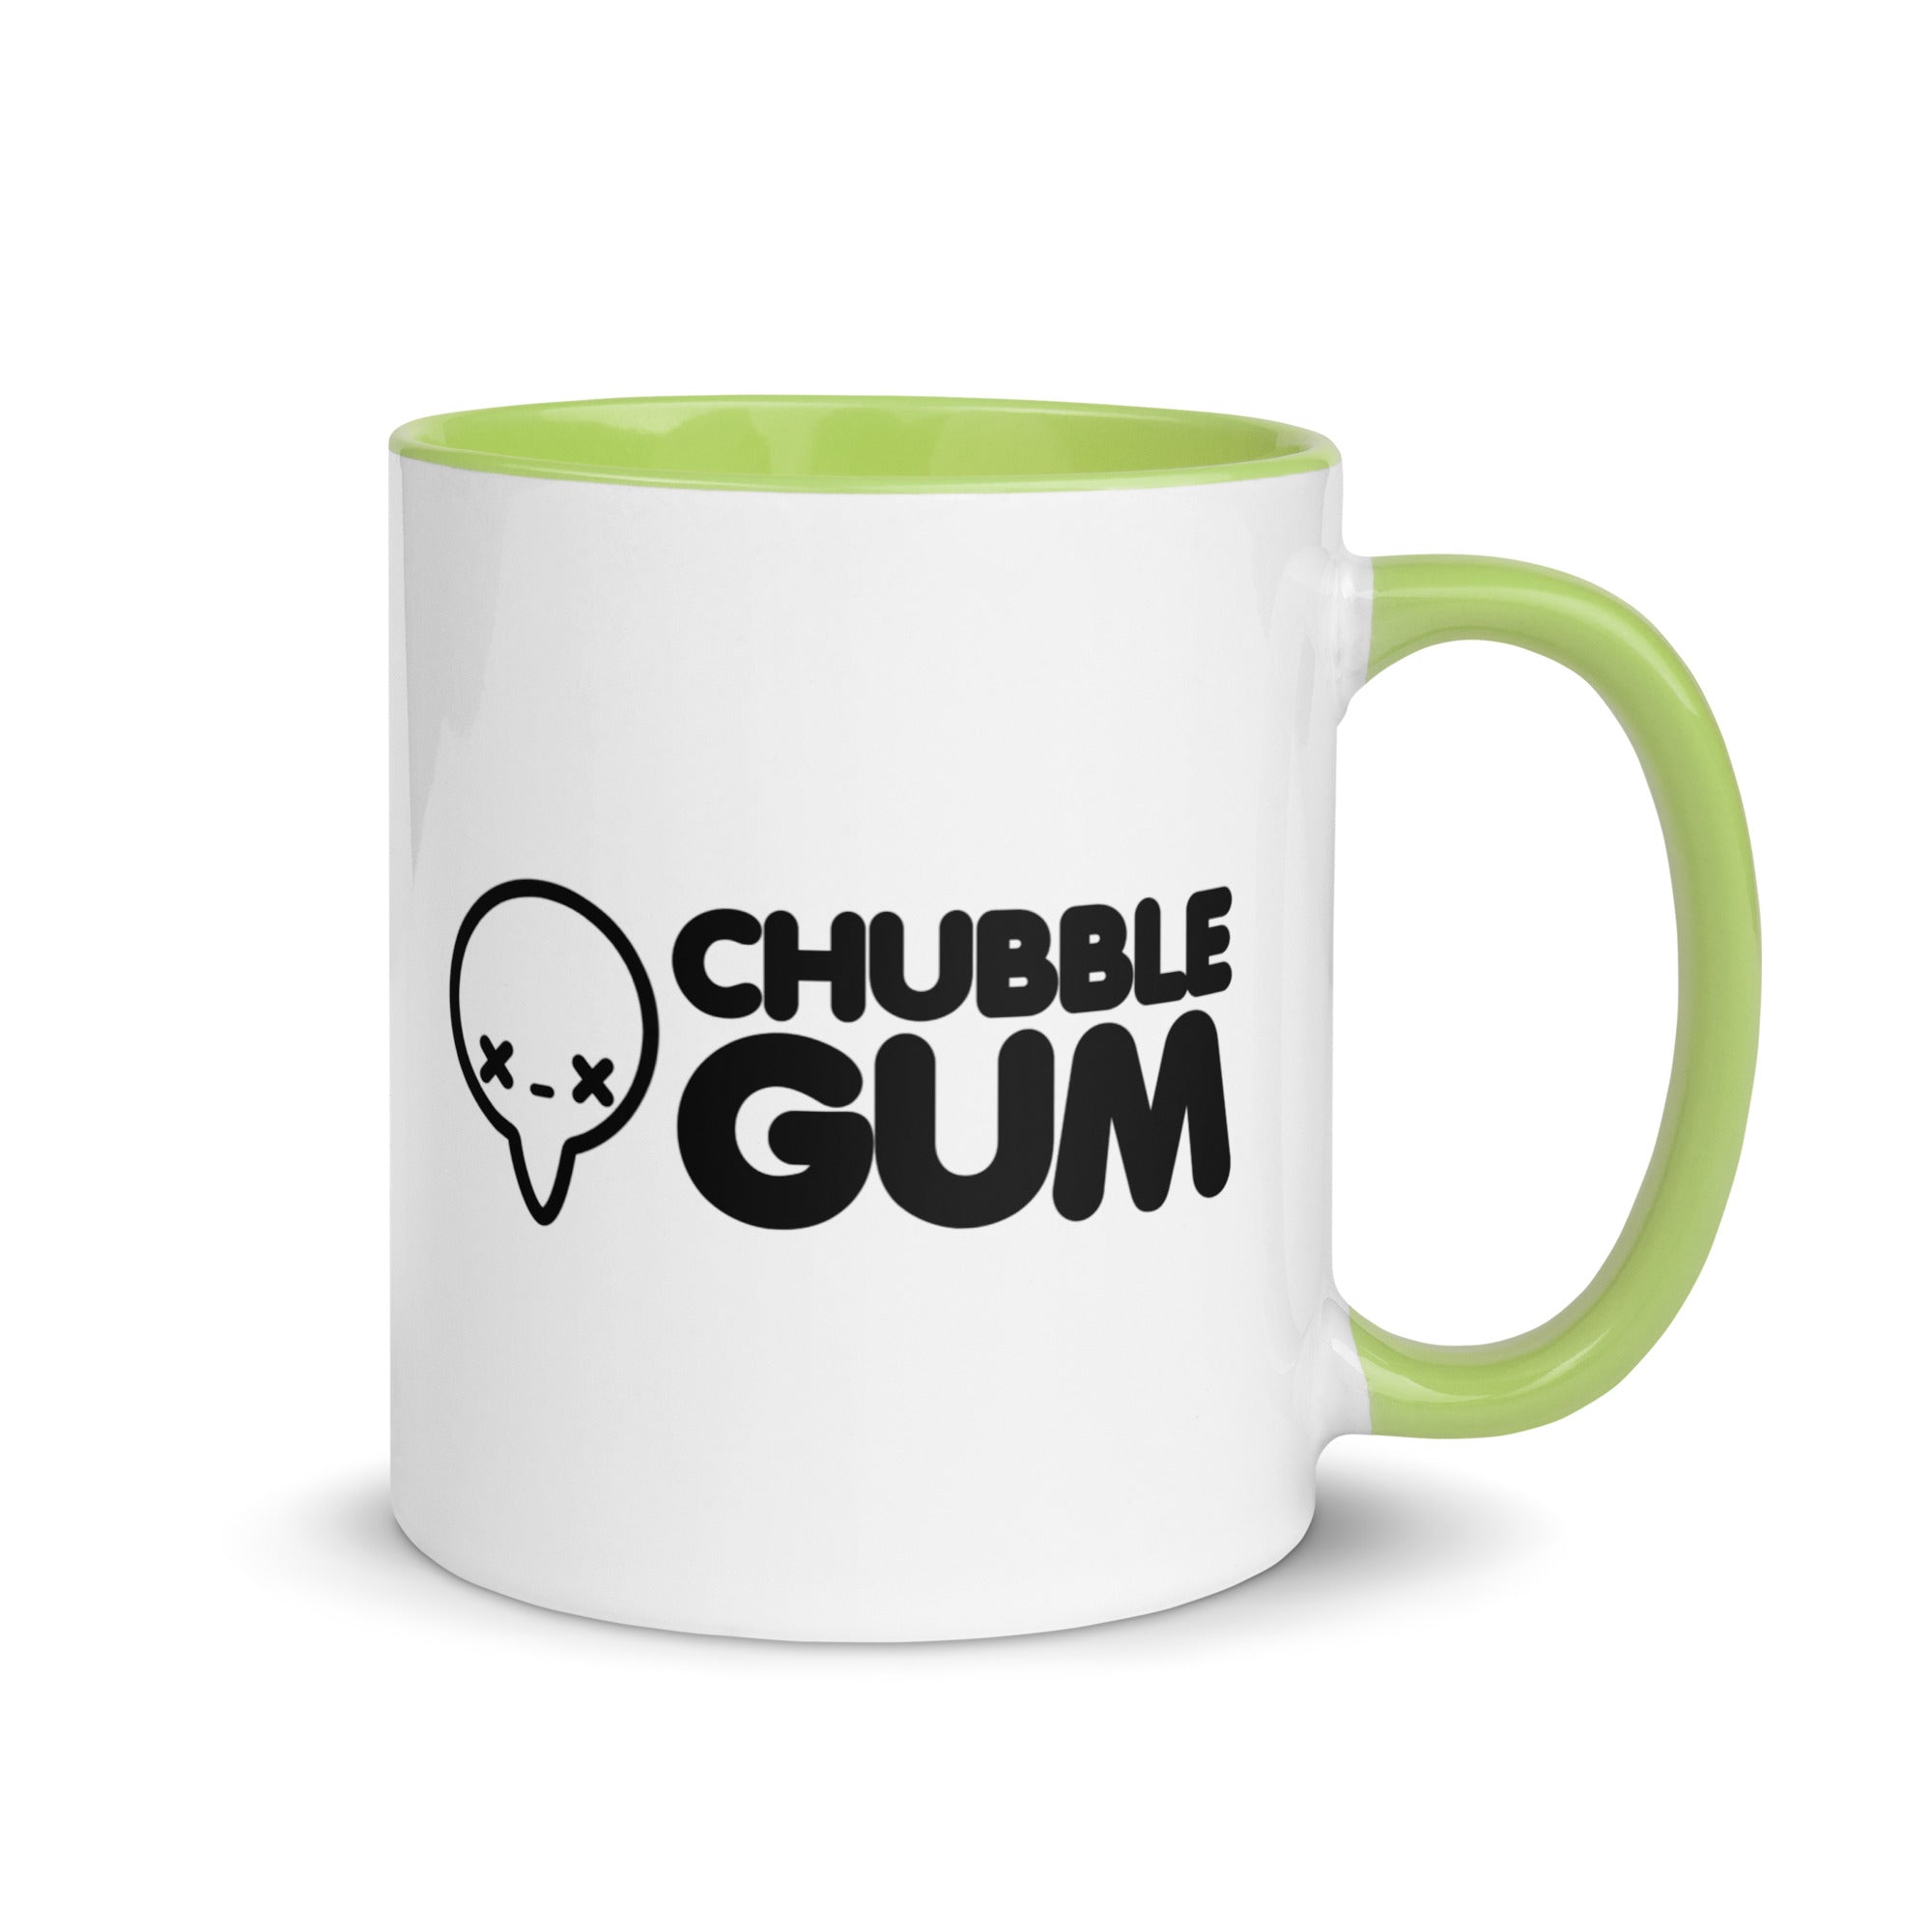 IF YOU GOT IT HAUNT IT - Mug with Color Inside - ChubbleGumLLC